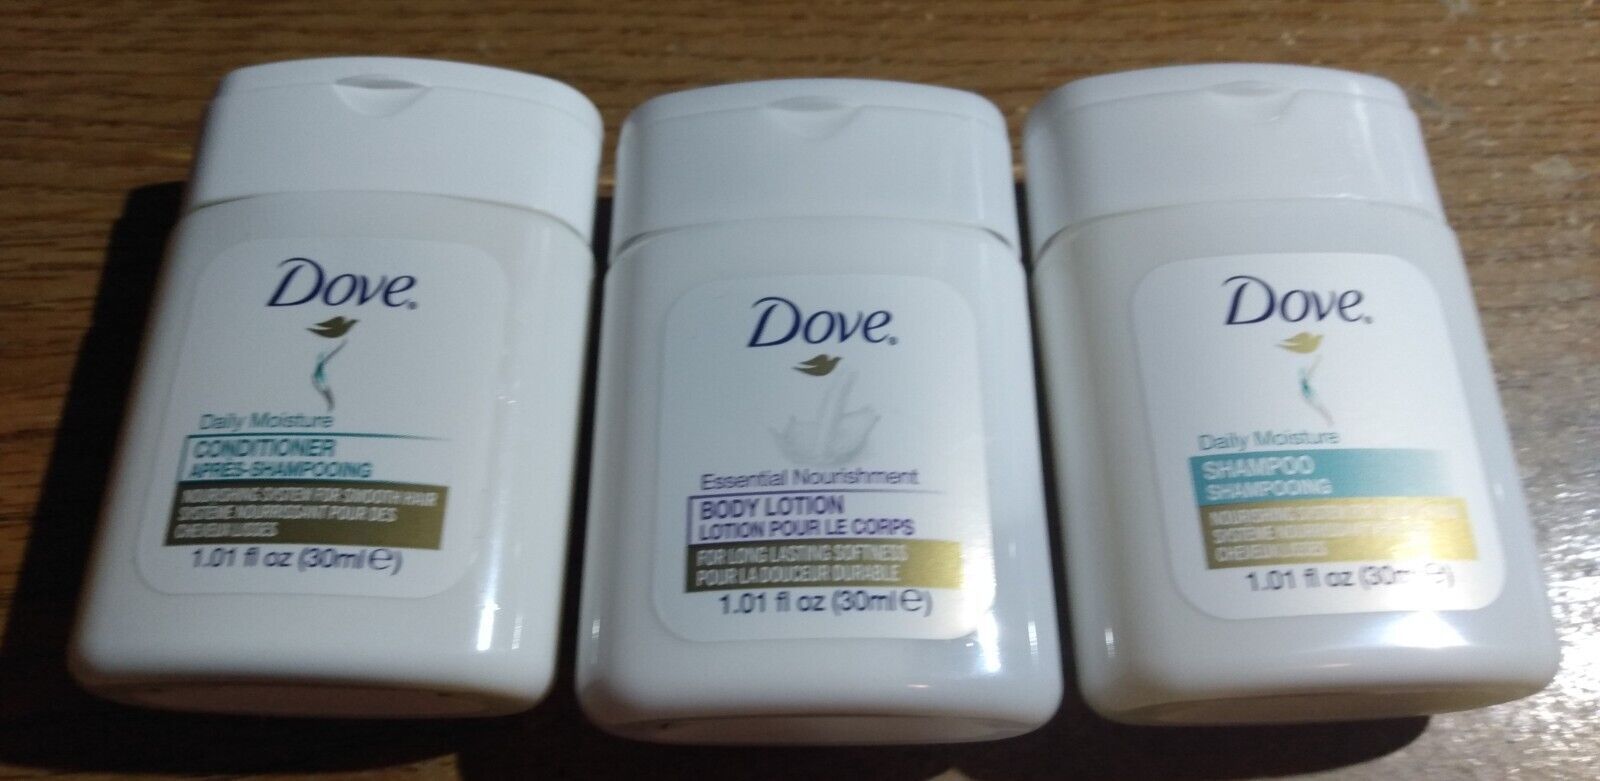 Dove - (5) Dove Travel Size 1 Shampoo, 1 Conditioner, 1 Body Lotion - $1.75